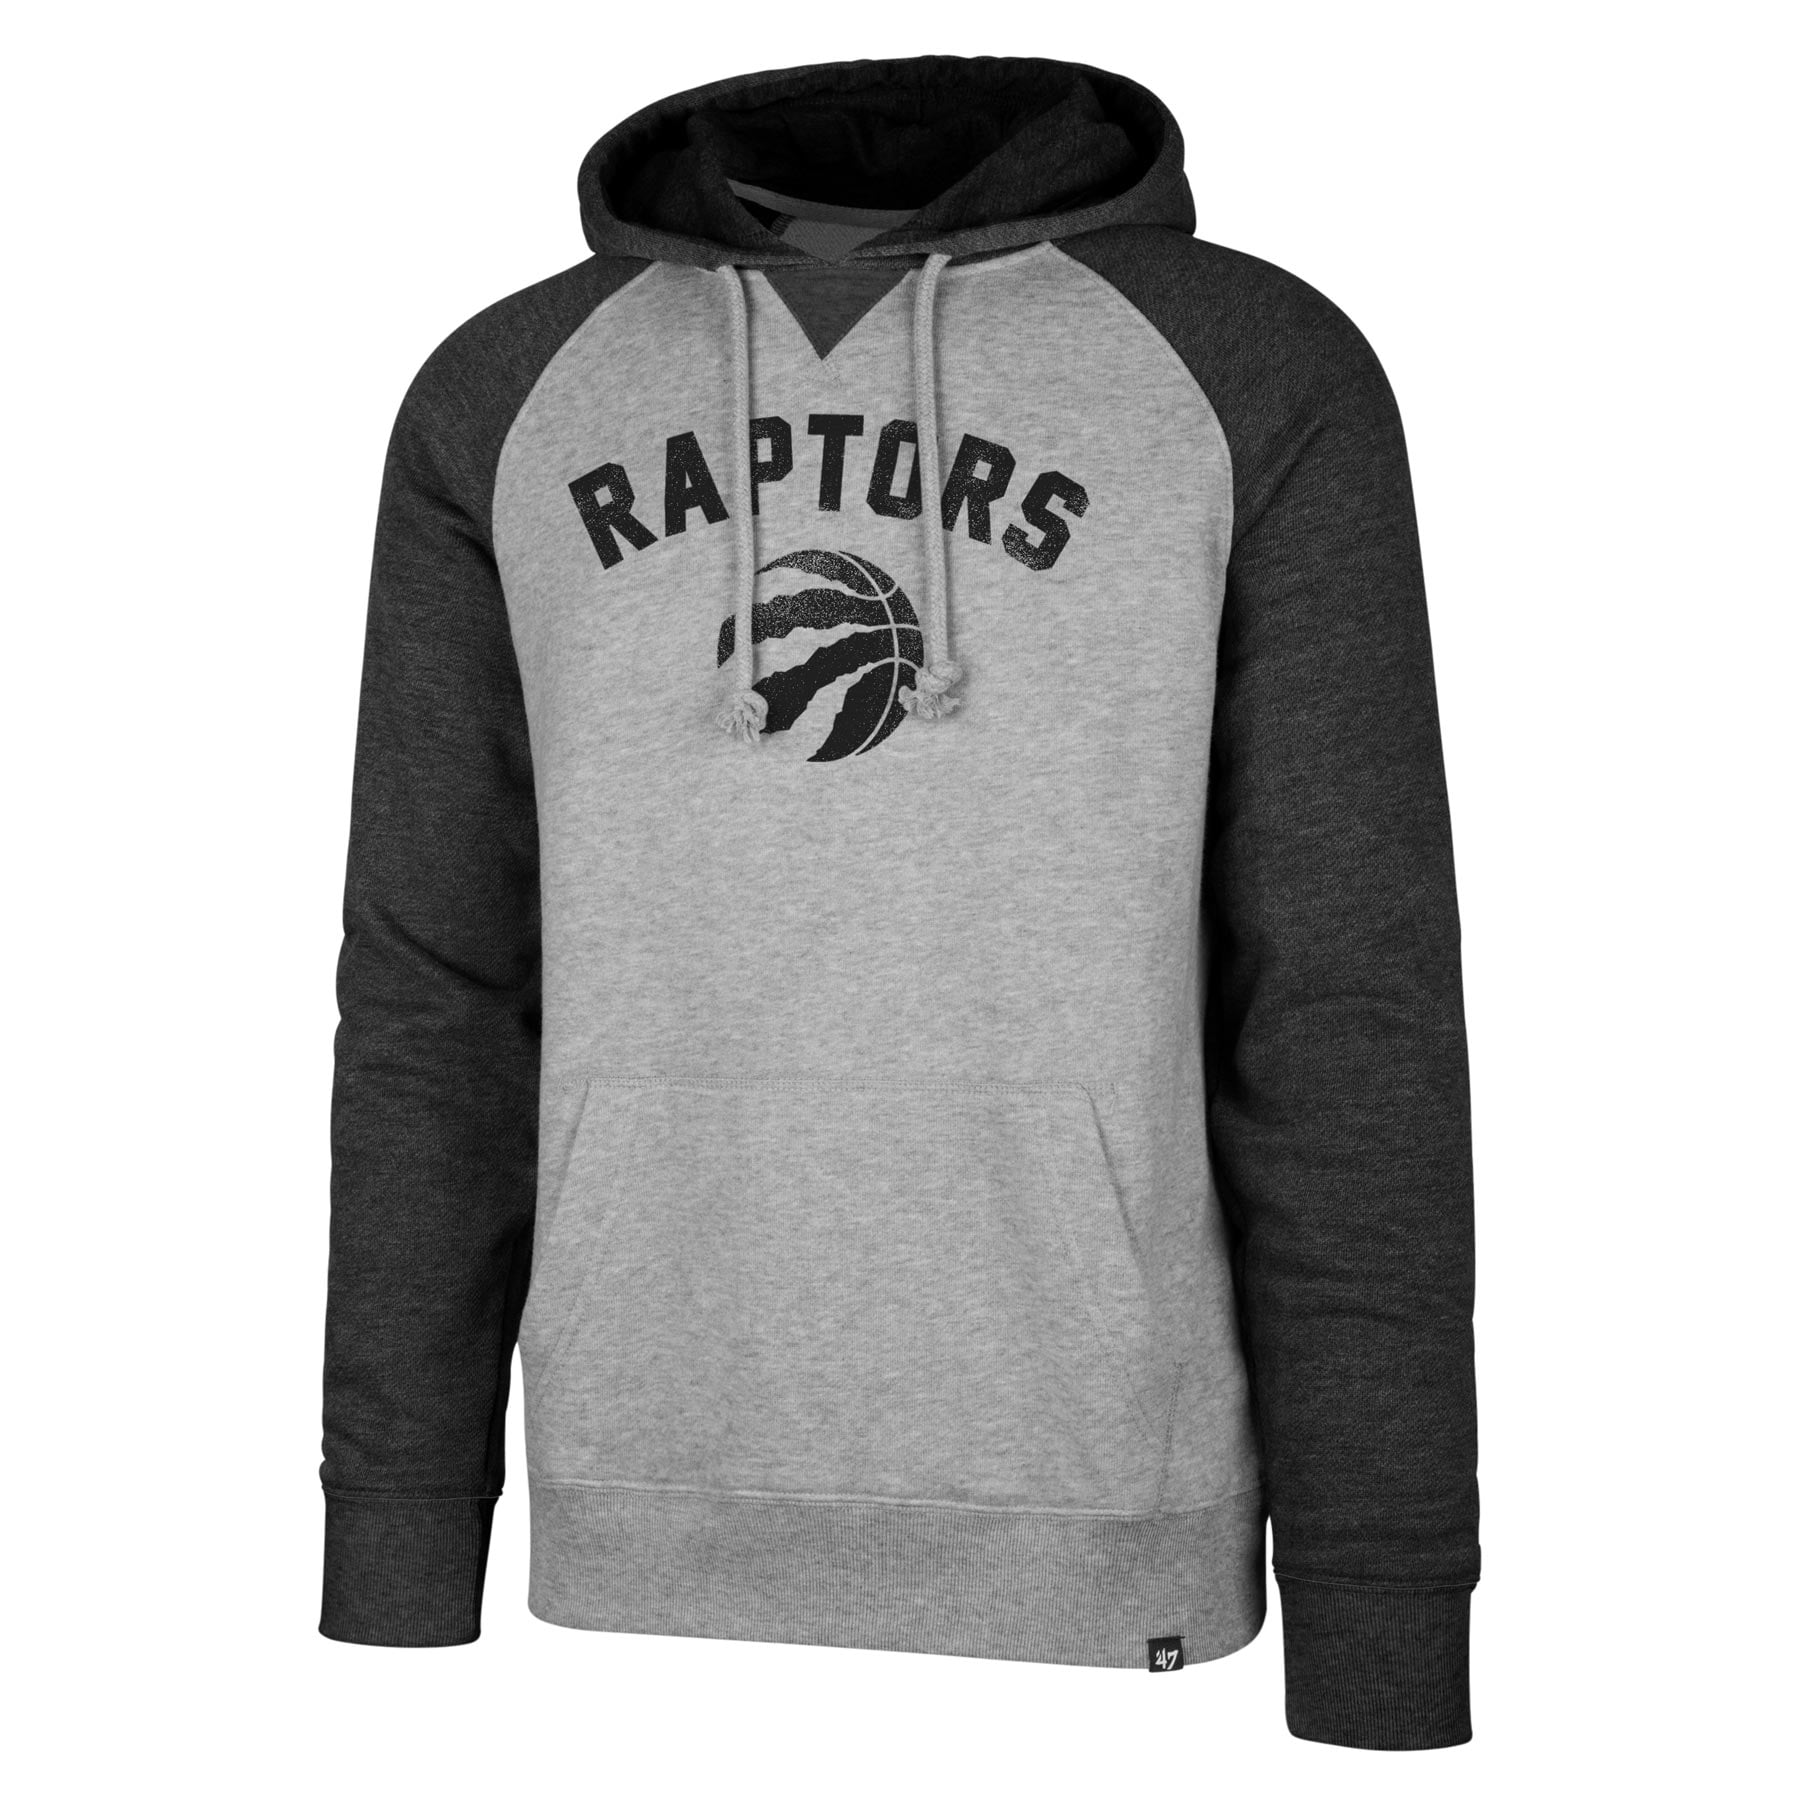 raptors hoodie canada